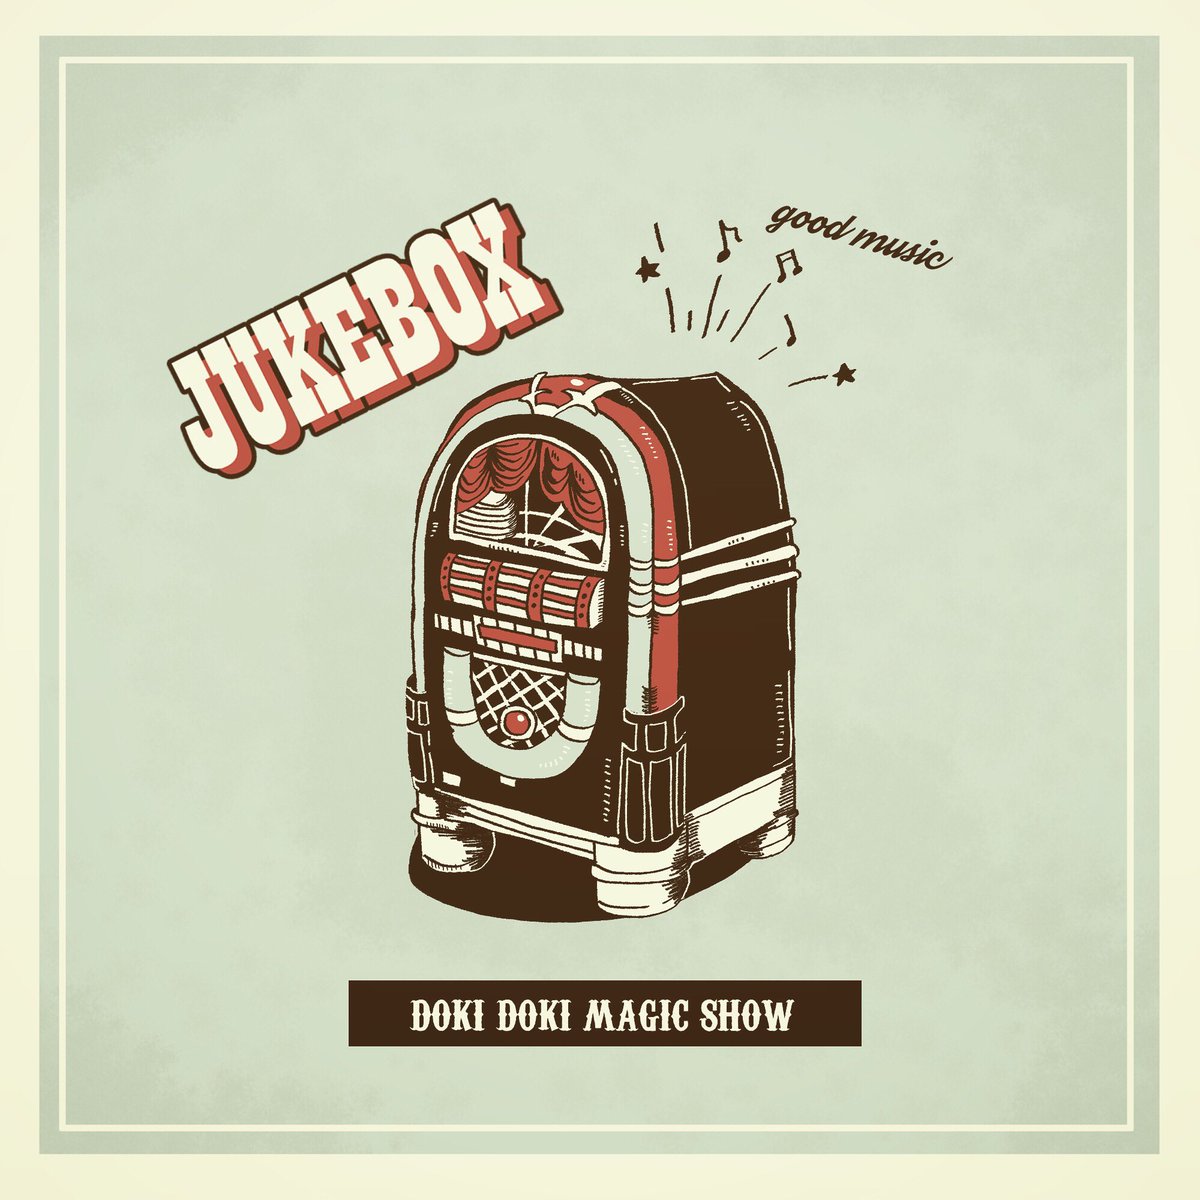 Magiko 9 1ジャンプ 配信 Jukebox イラスト イラストグラム 絵 デザイン ジュークボックス おしゃれ かわいい ヴィンテージ アメリカン ヴィンテージ家具 1930s Drowing Illastration Design Vintage Jukebox T Co Lz0wellsje